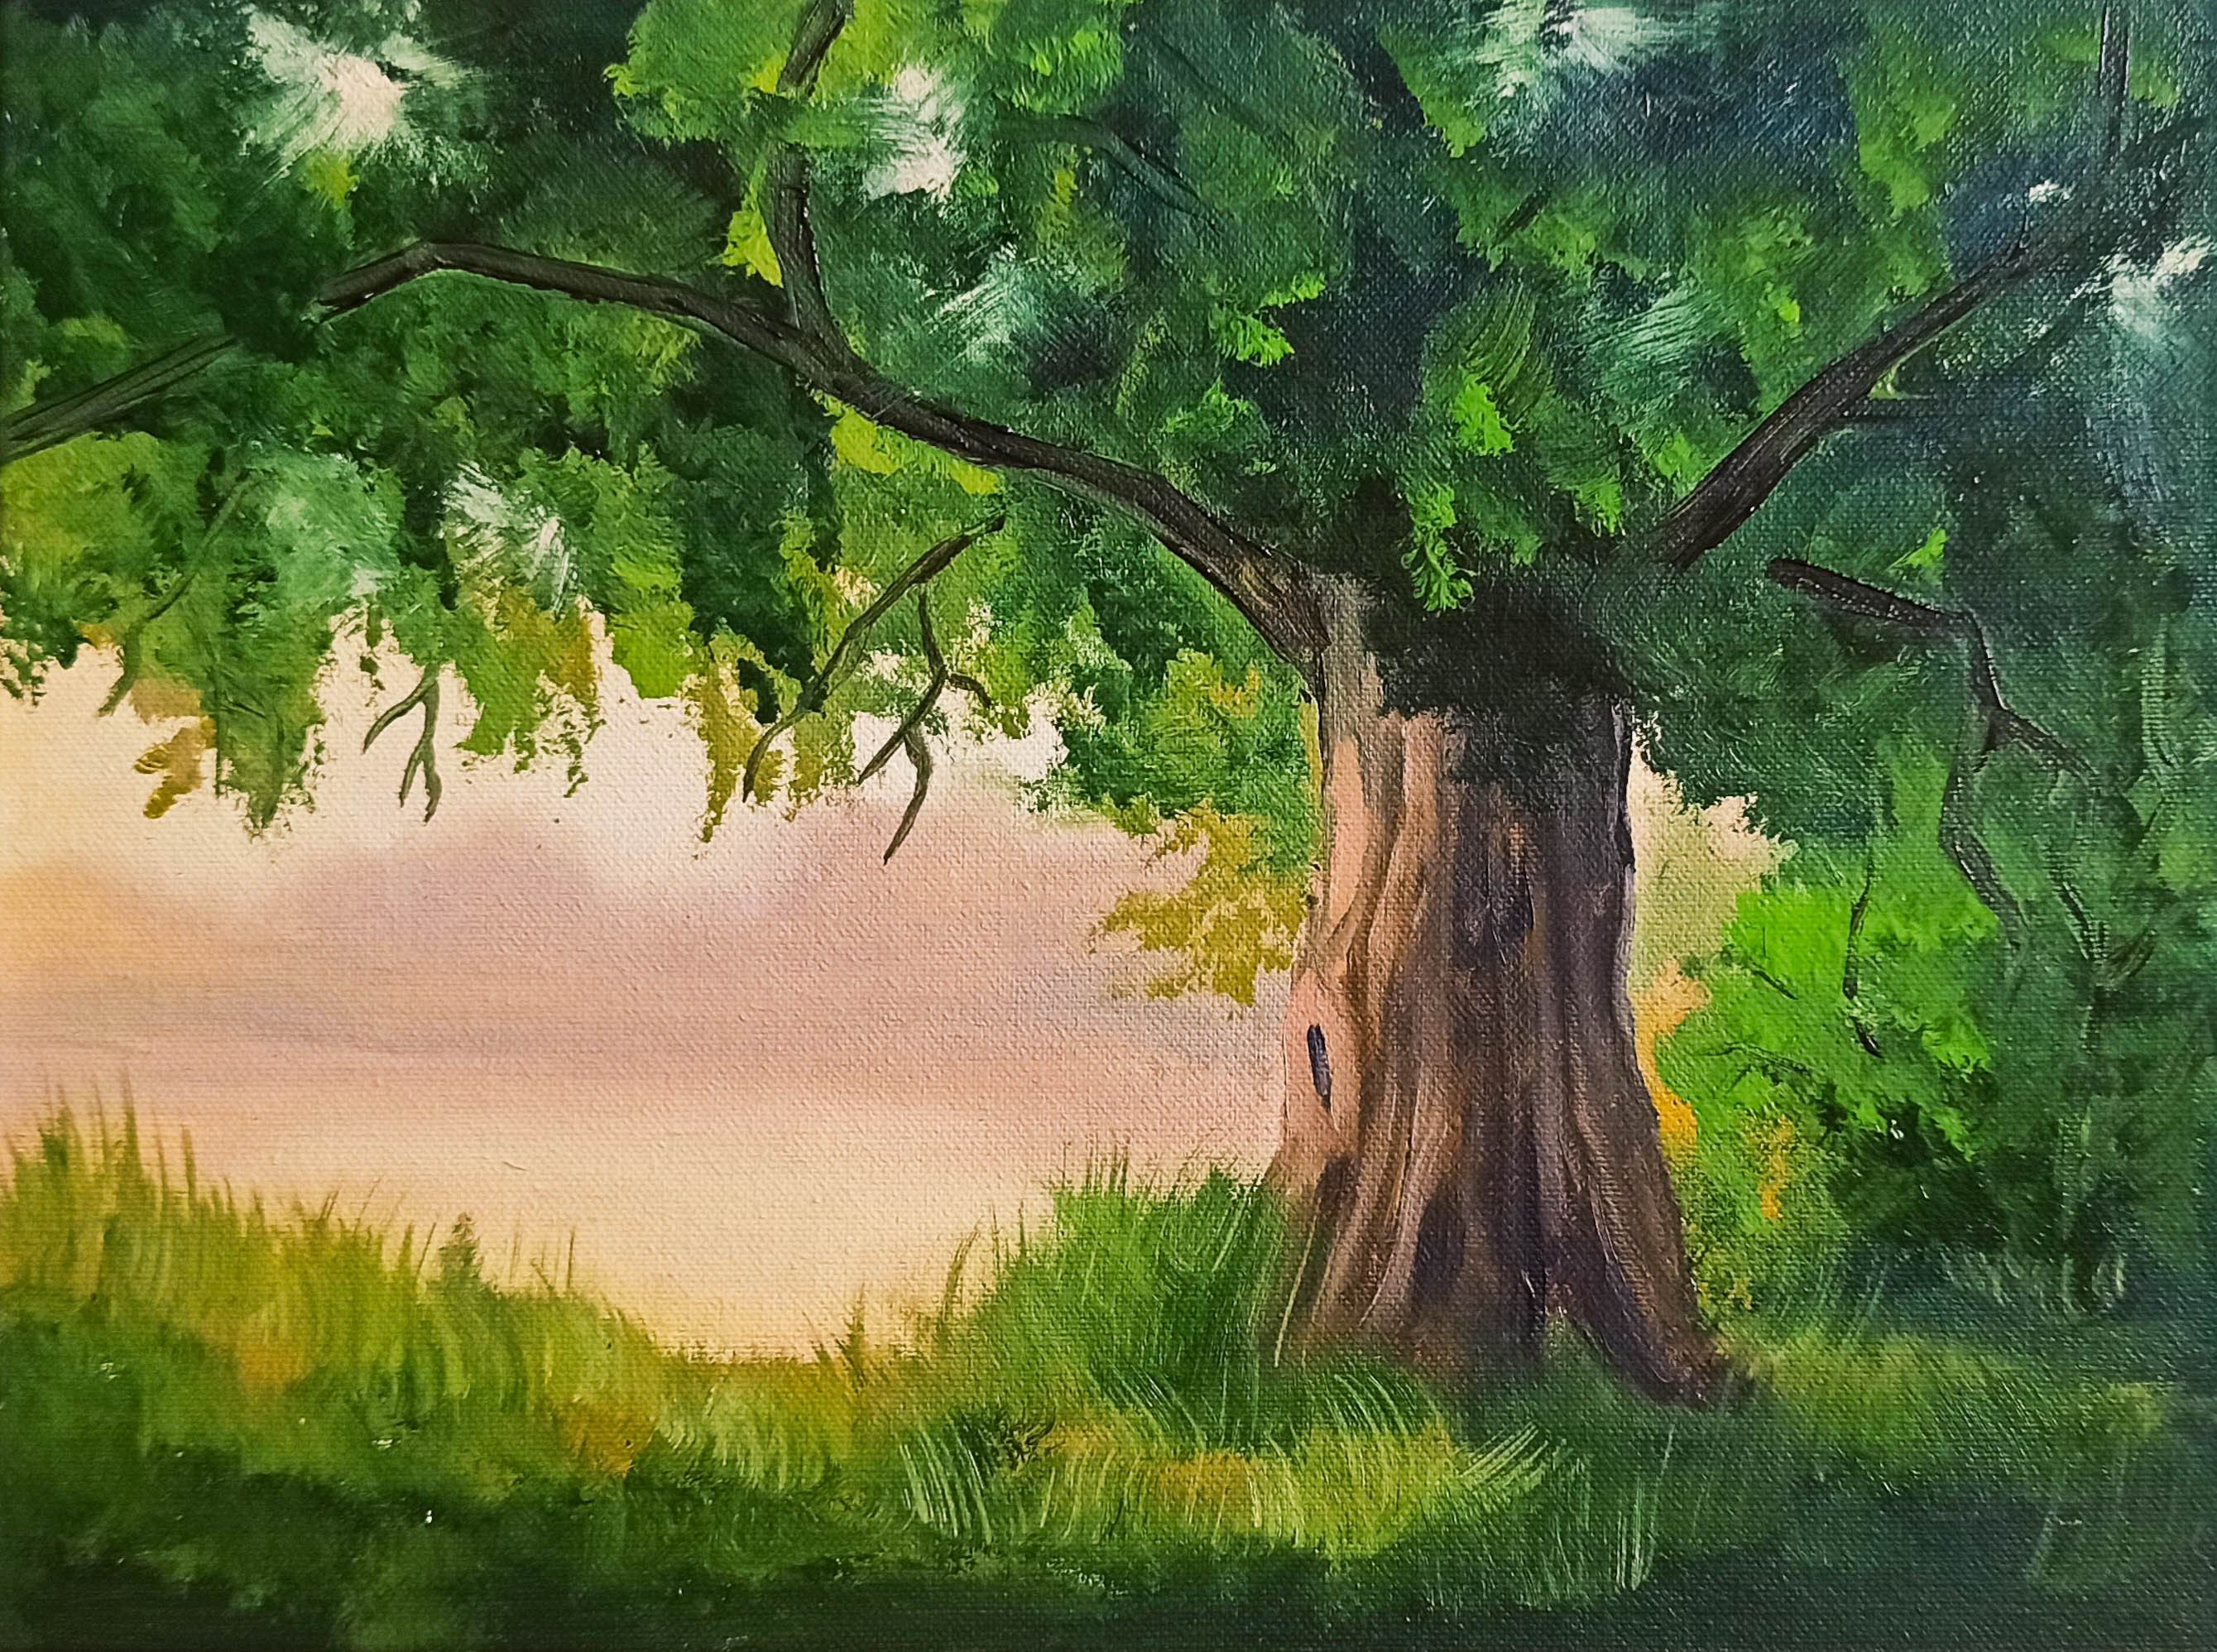 Oak Tree Painting Original Art Tree of Life Painting on Canvas | Etsy